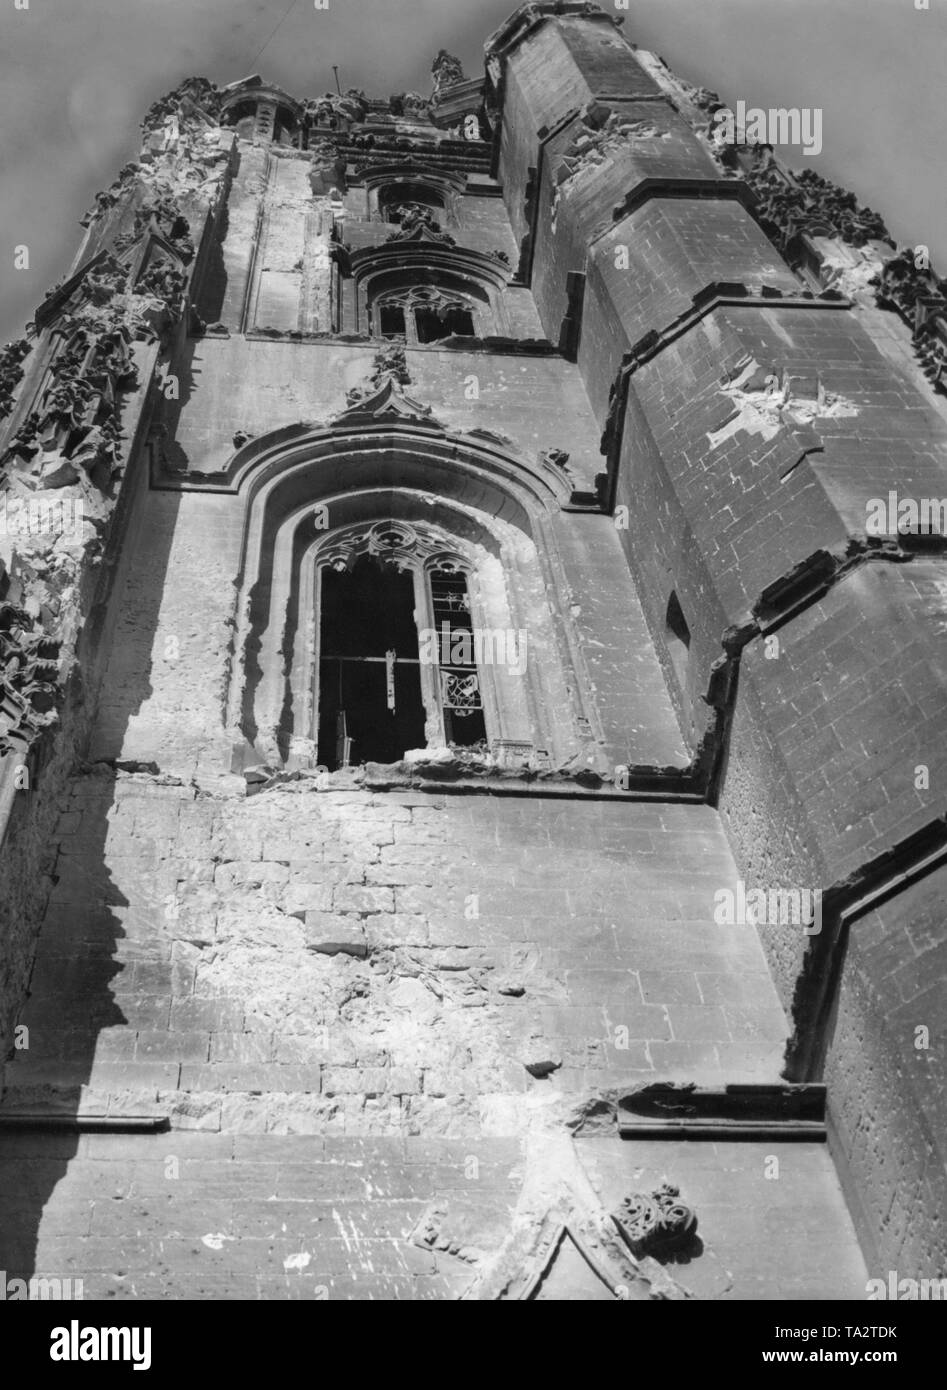 Undatiertes Foto eines zerstörten Kirche. Low Angle Shot auf eine Kirche Fassade eines unbekannten Kirche, die teilweise durch schwere Waffen zerstört wurde, vermutlich Artillerie Granaten. Bullet Schüsse sind auch erkennbar. Stockfoto